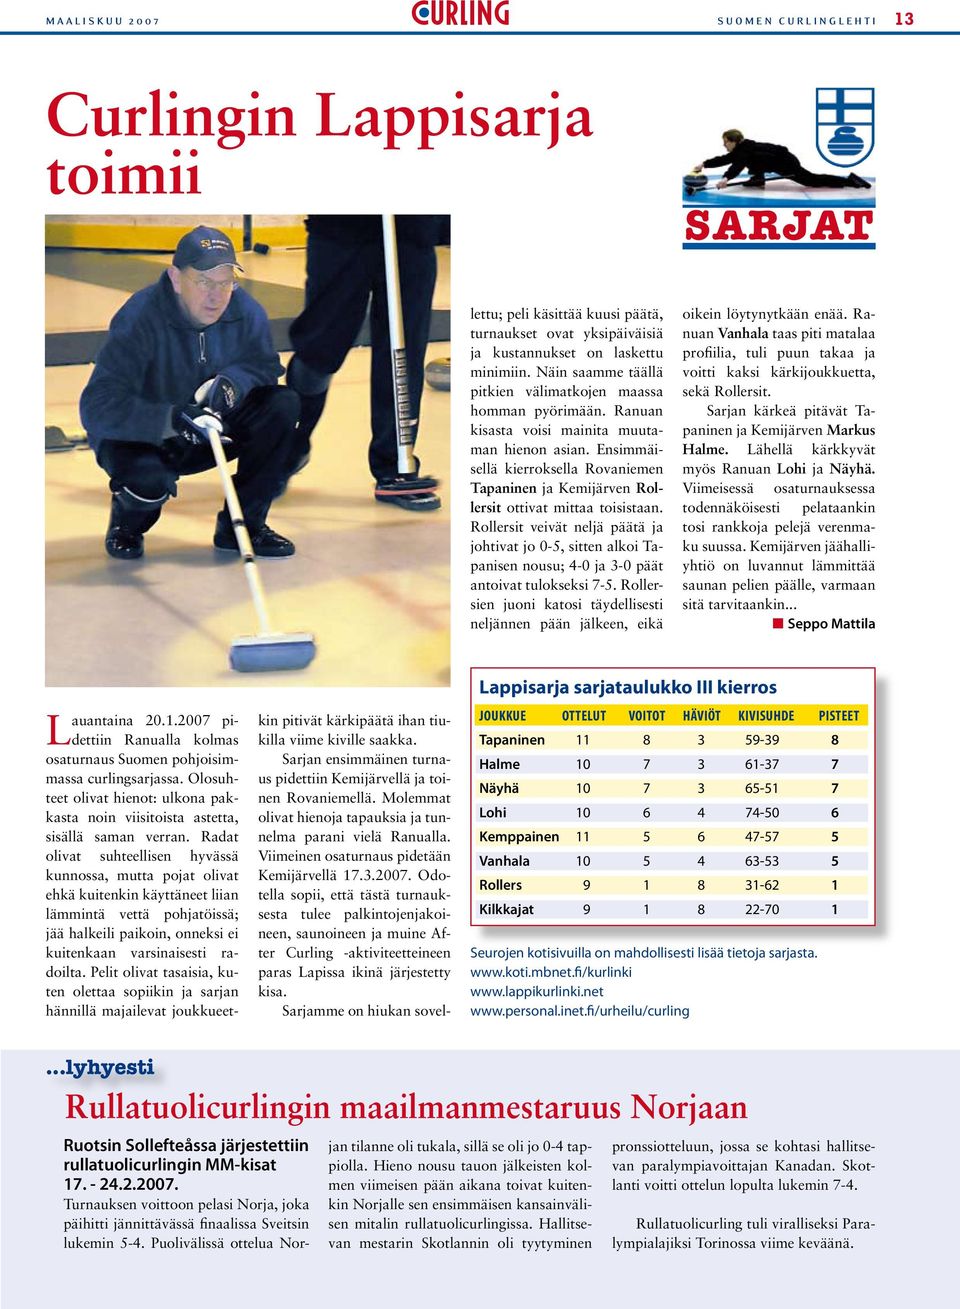 Ensimmäisellä kierroksella Rovaniemen Tapaninen ja Kemijärven Rollersit ottivat mittaa toisistaan.